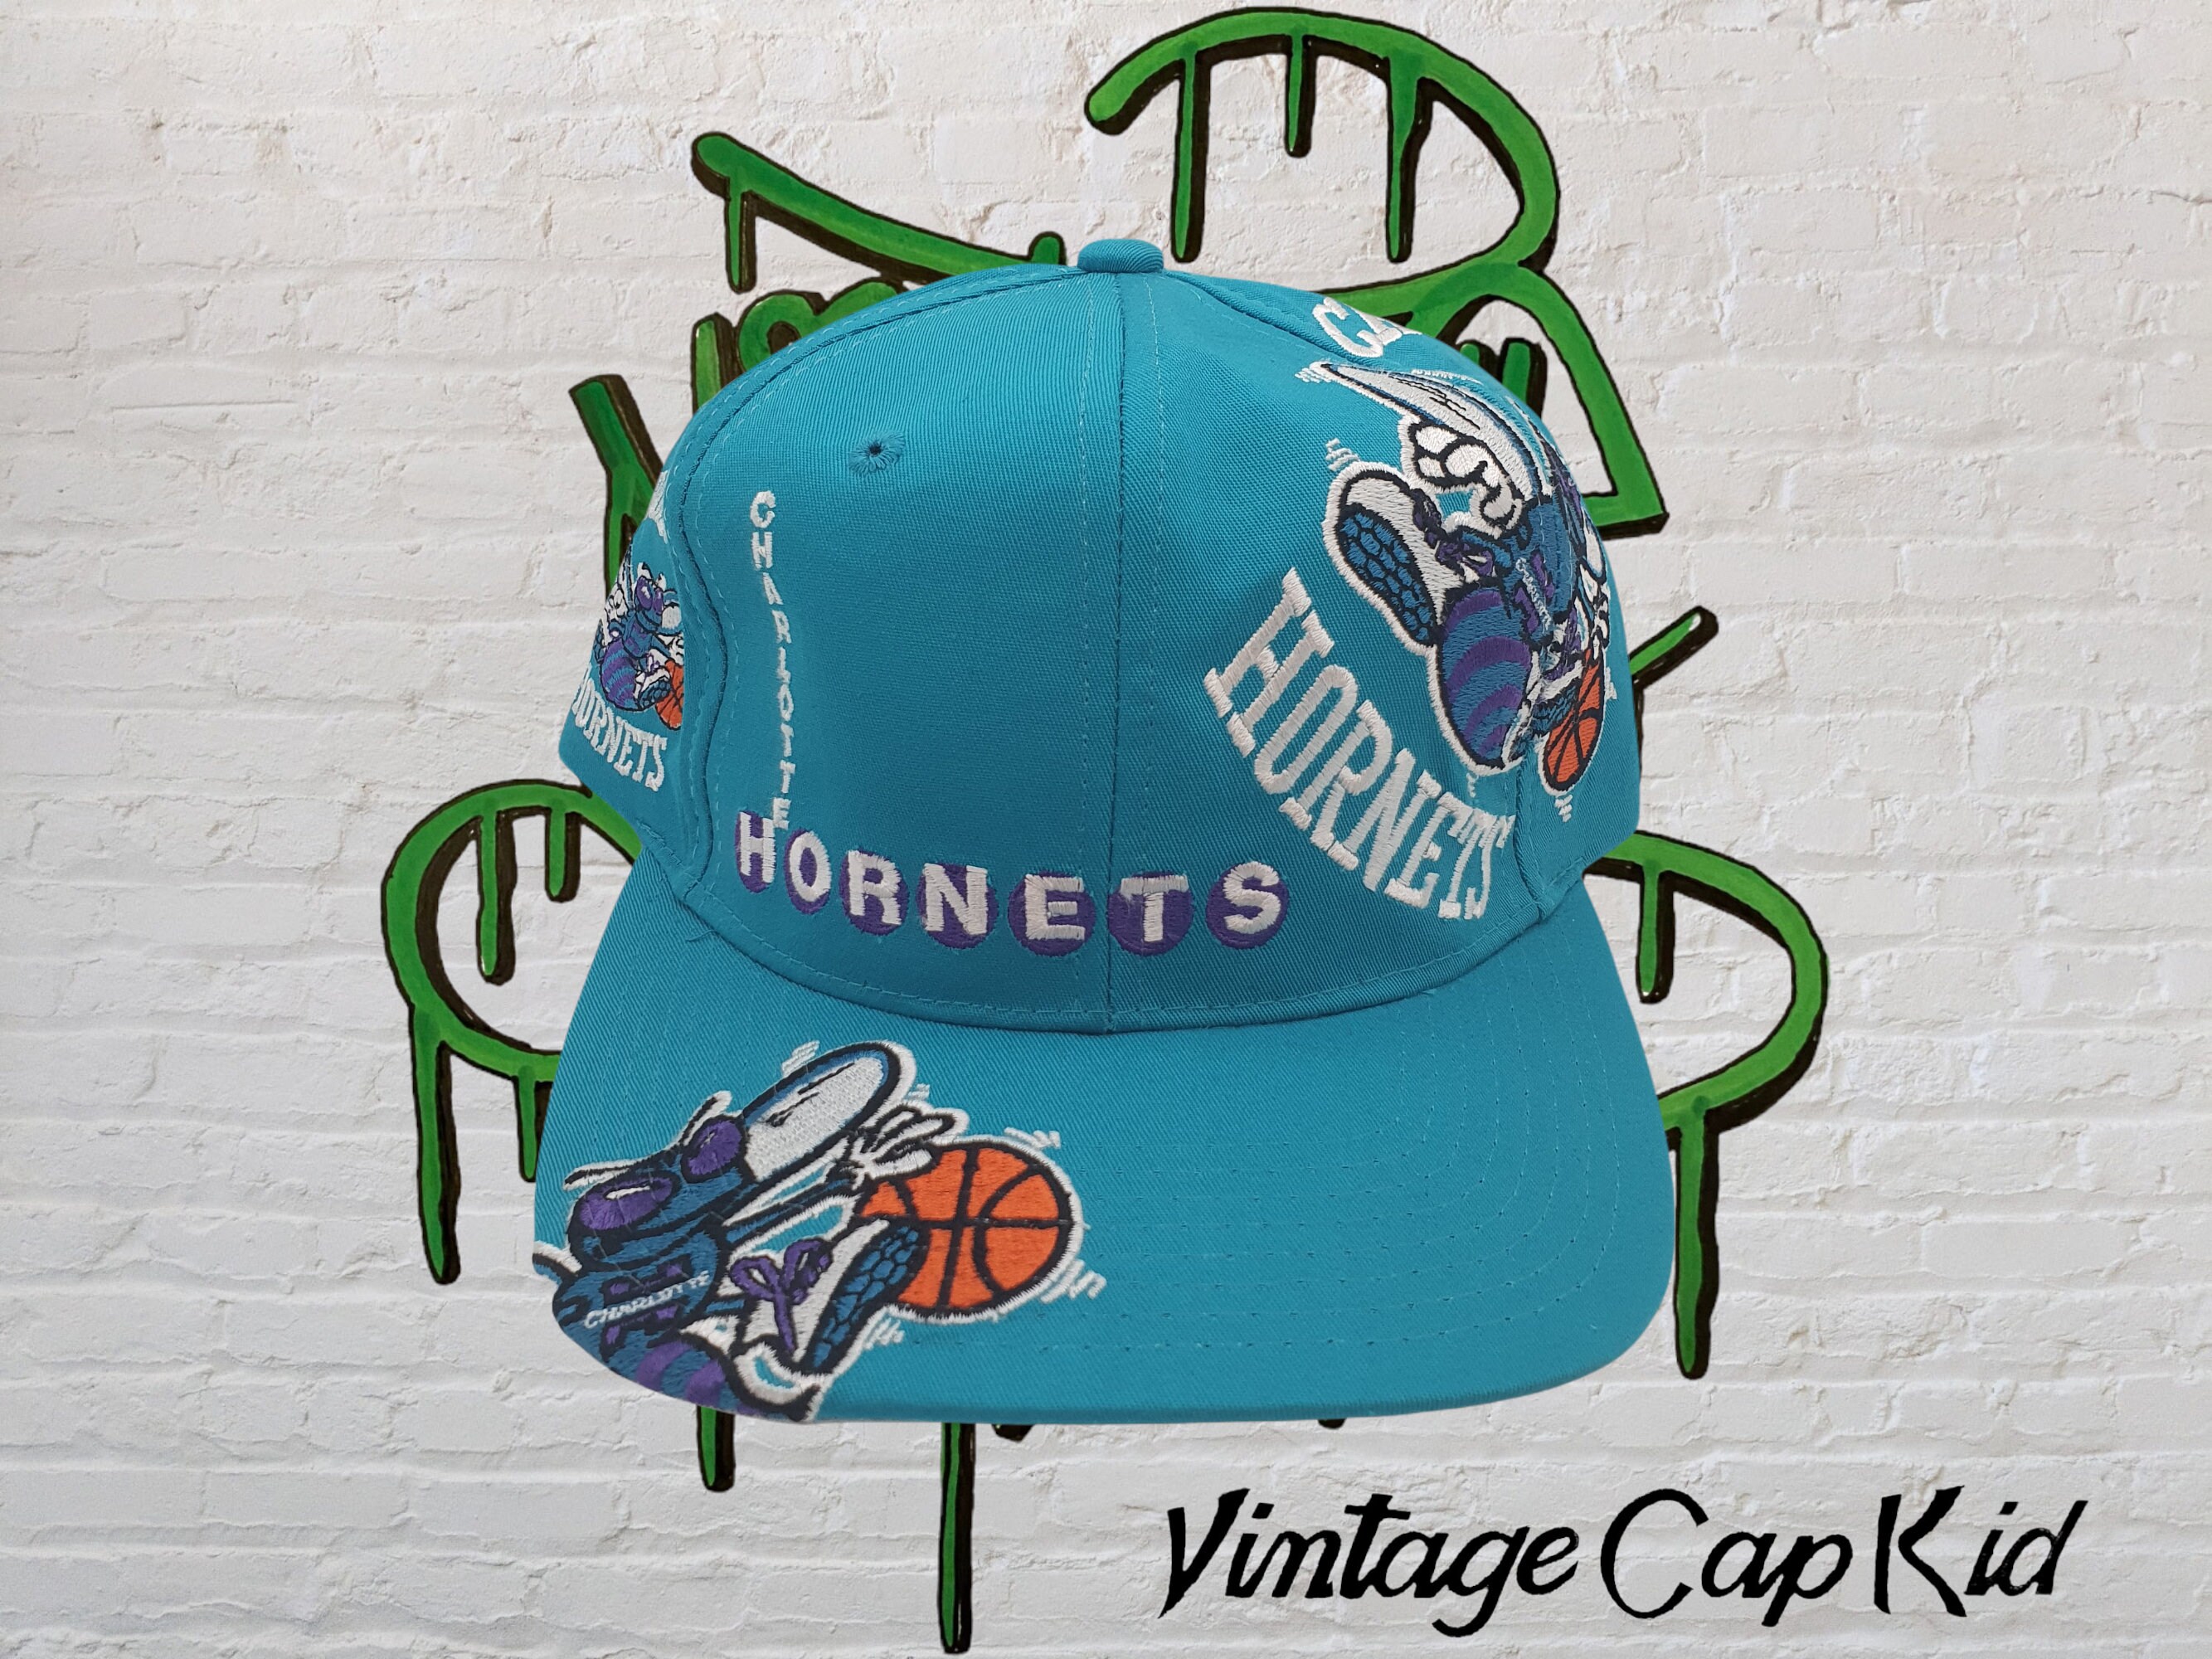 & truckerspetten Charlotte Hornets vintage Starter Splat Snapback Hat Cap nieuwstaat NBA 90s Accessoires Hoeden & petten Honkbal 